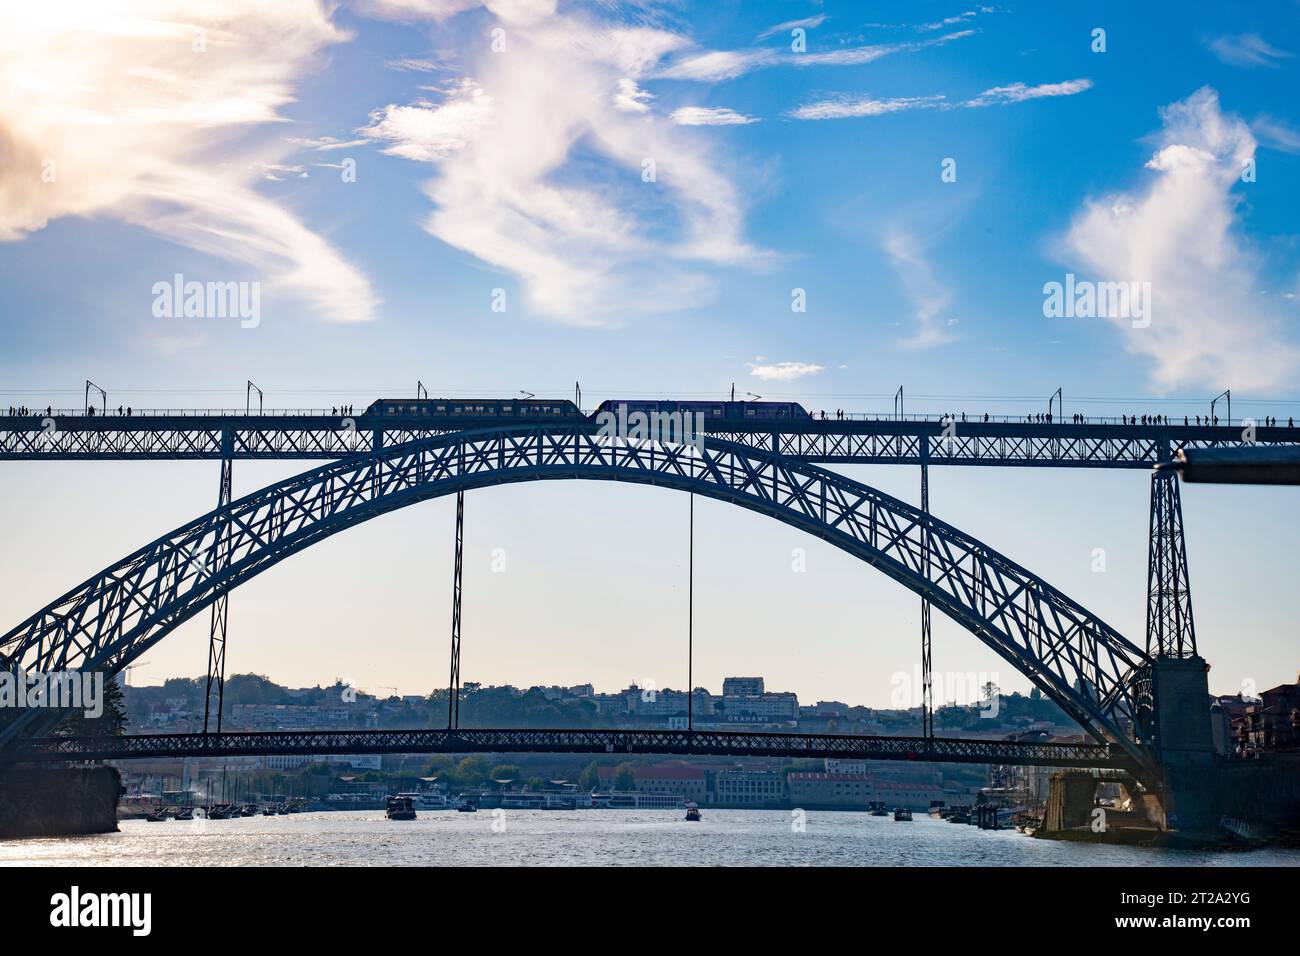 Metro train passing over the Ponte Dom Luis 1 bridge, over the River Douro, Porto, Portugal Stock Photo